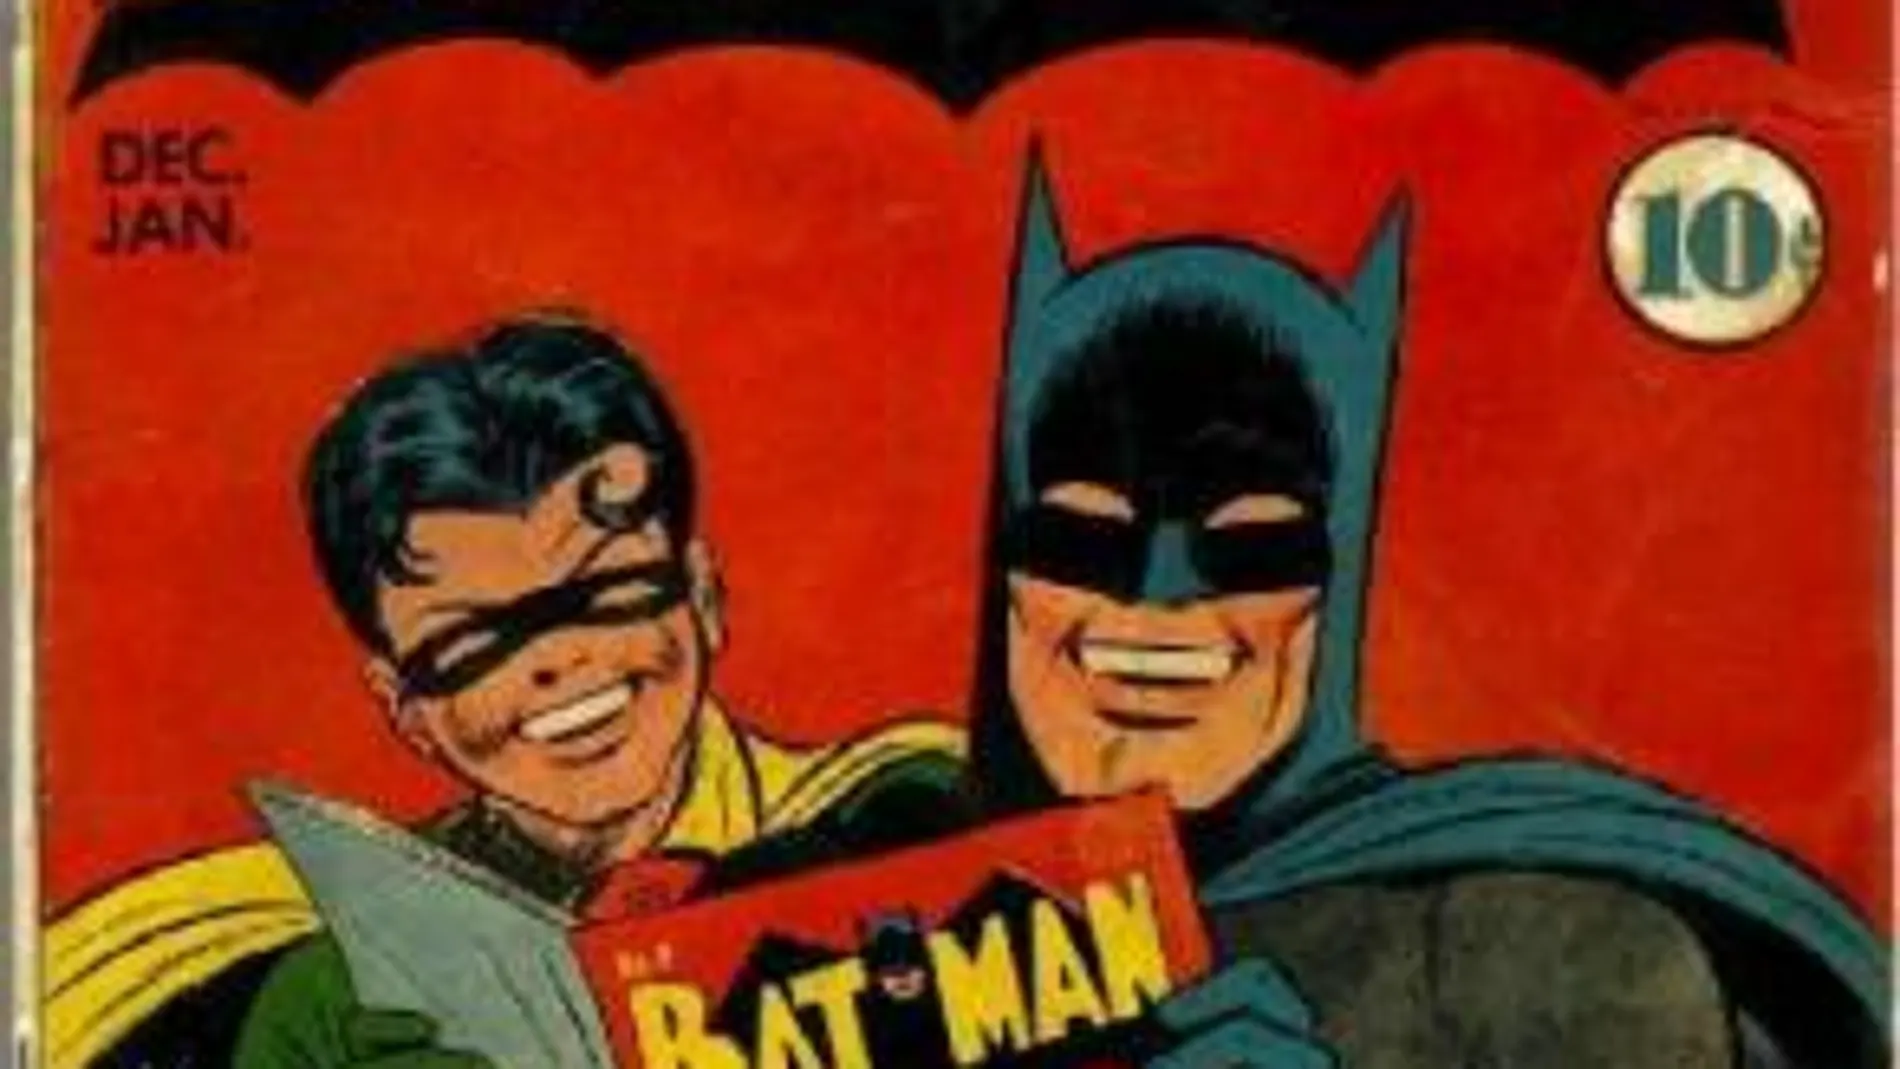 Batman el héroe de cómic que se apoderó de las pantallas cumple 70 años